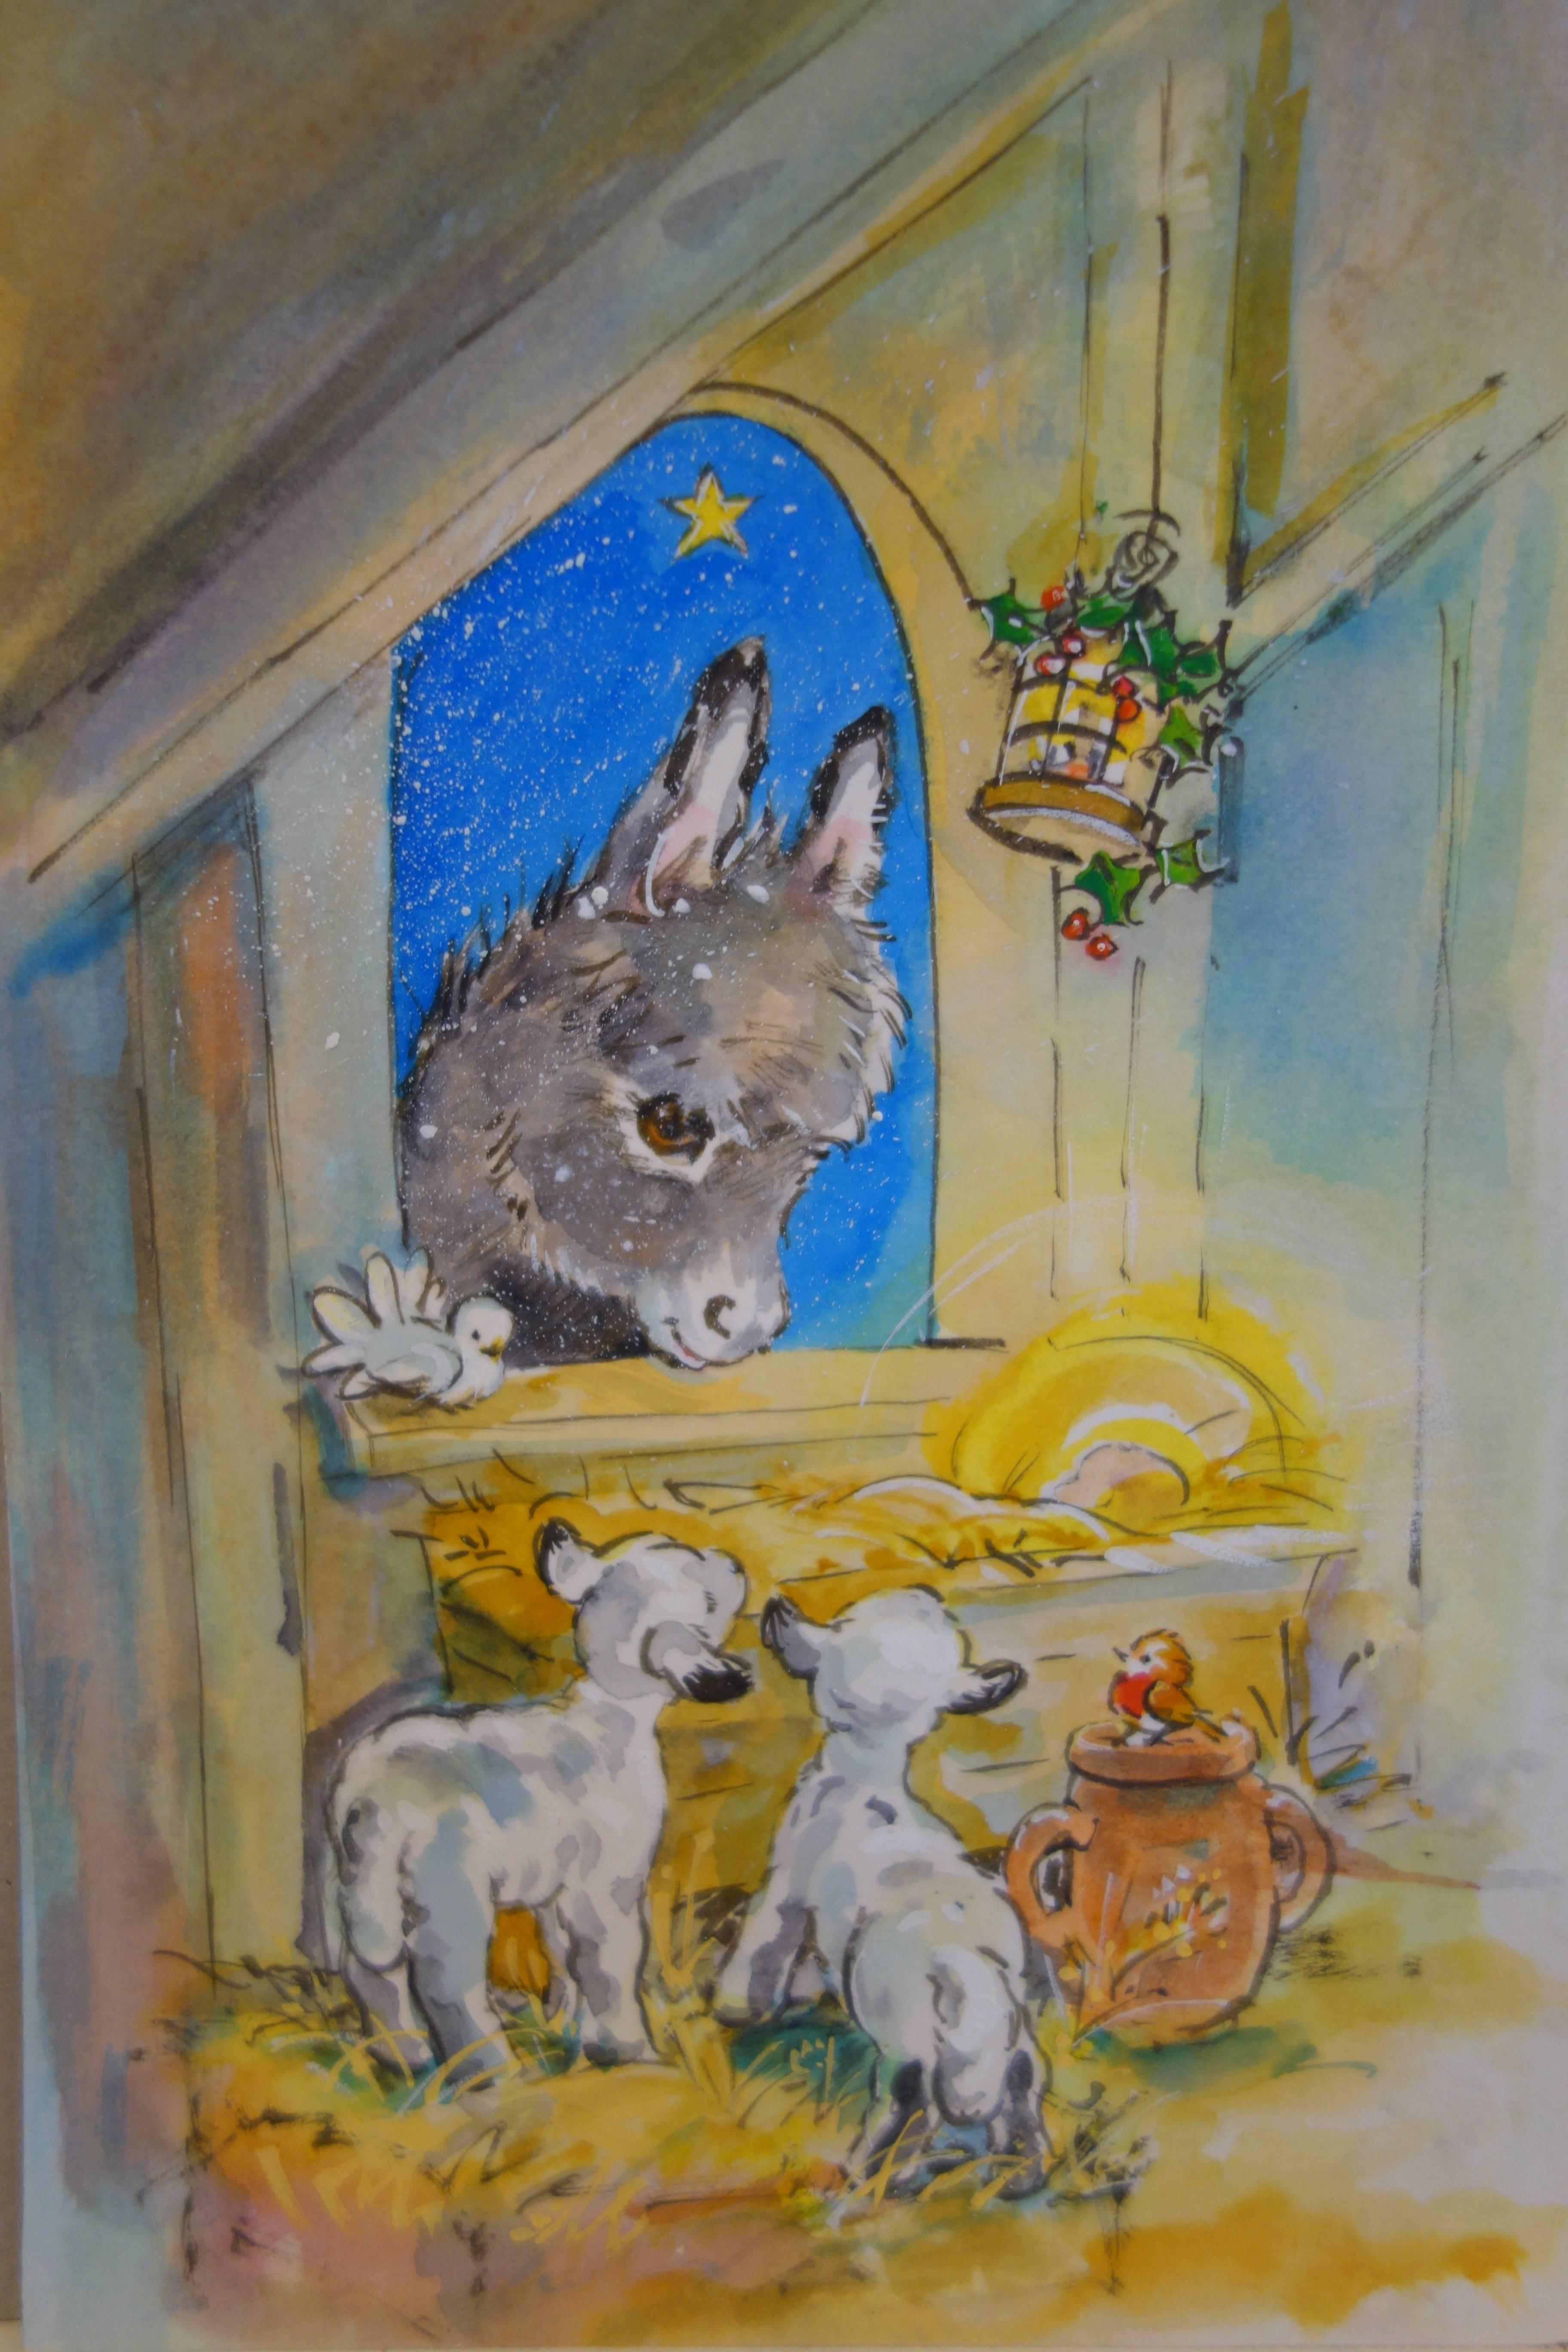 Weihnachtensnacht mit Donkeys, einem Robin und einem Lamm in einem Stall, von einem Krippen